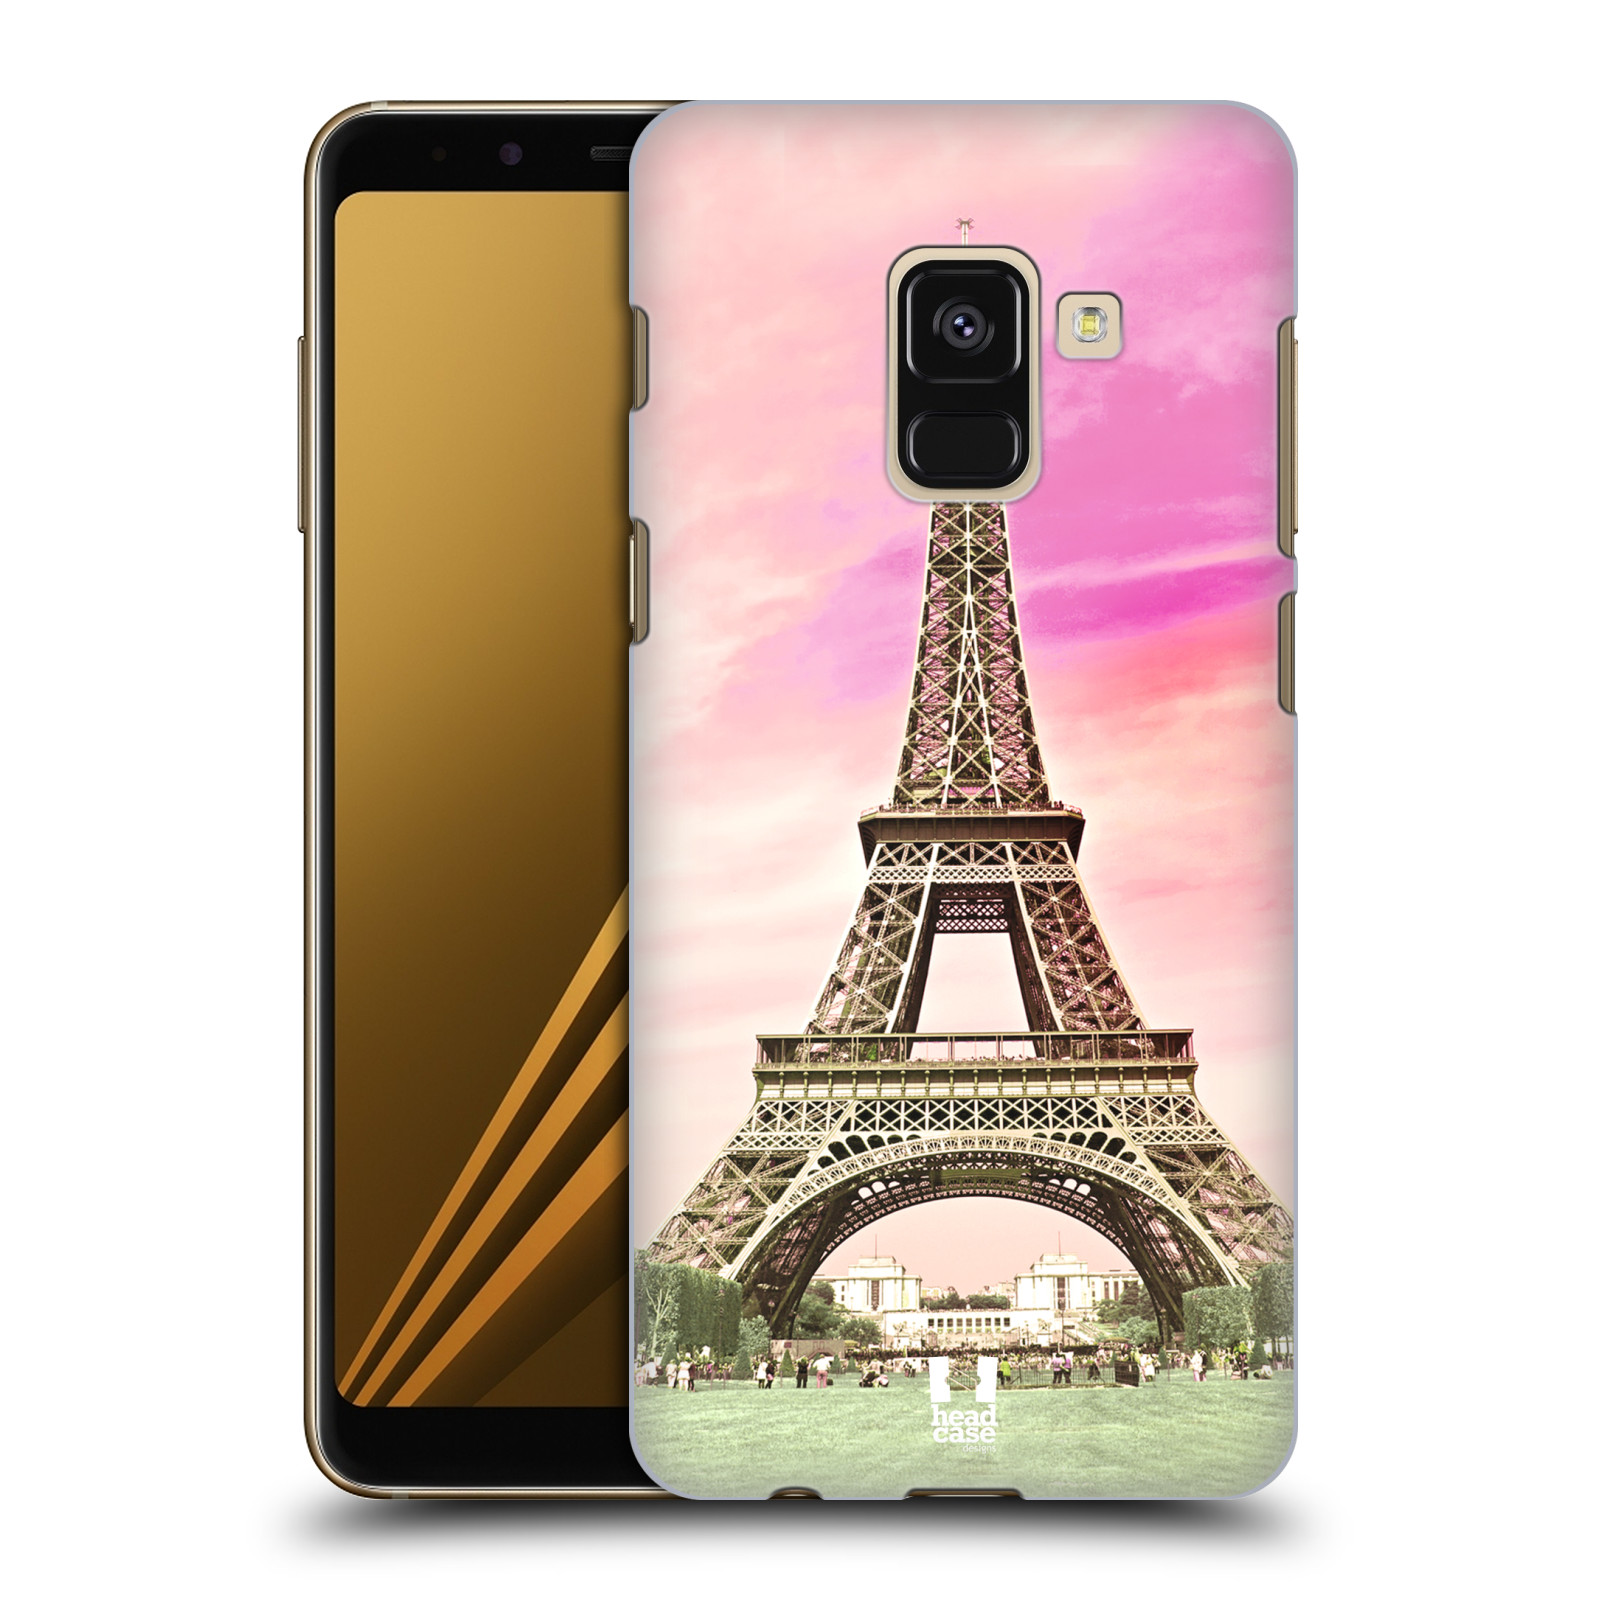 Pouzdro na mobil Samsung Galaxy A8+ 2018, A8 PLUS 2018 - HEAD CASE - historická místa Eiffelova věž Paříž